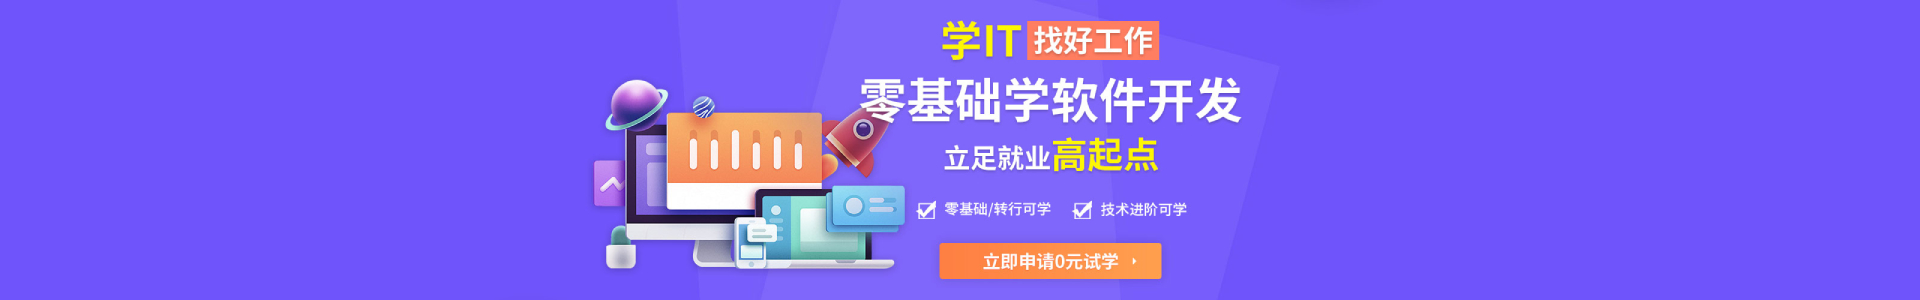 上海中公优UI设计培训